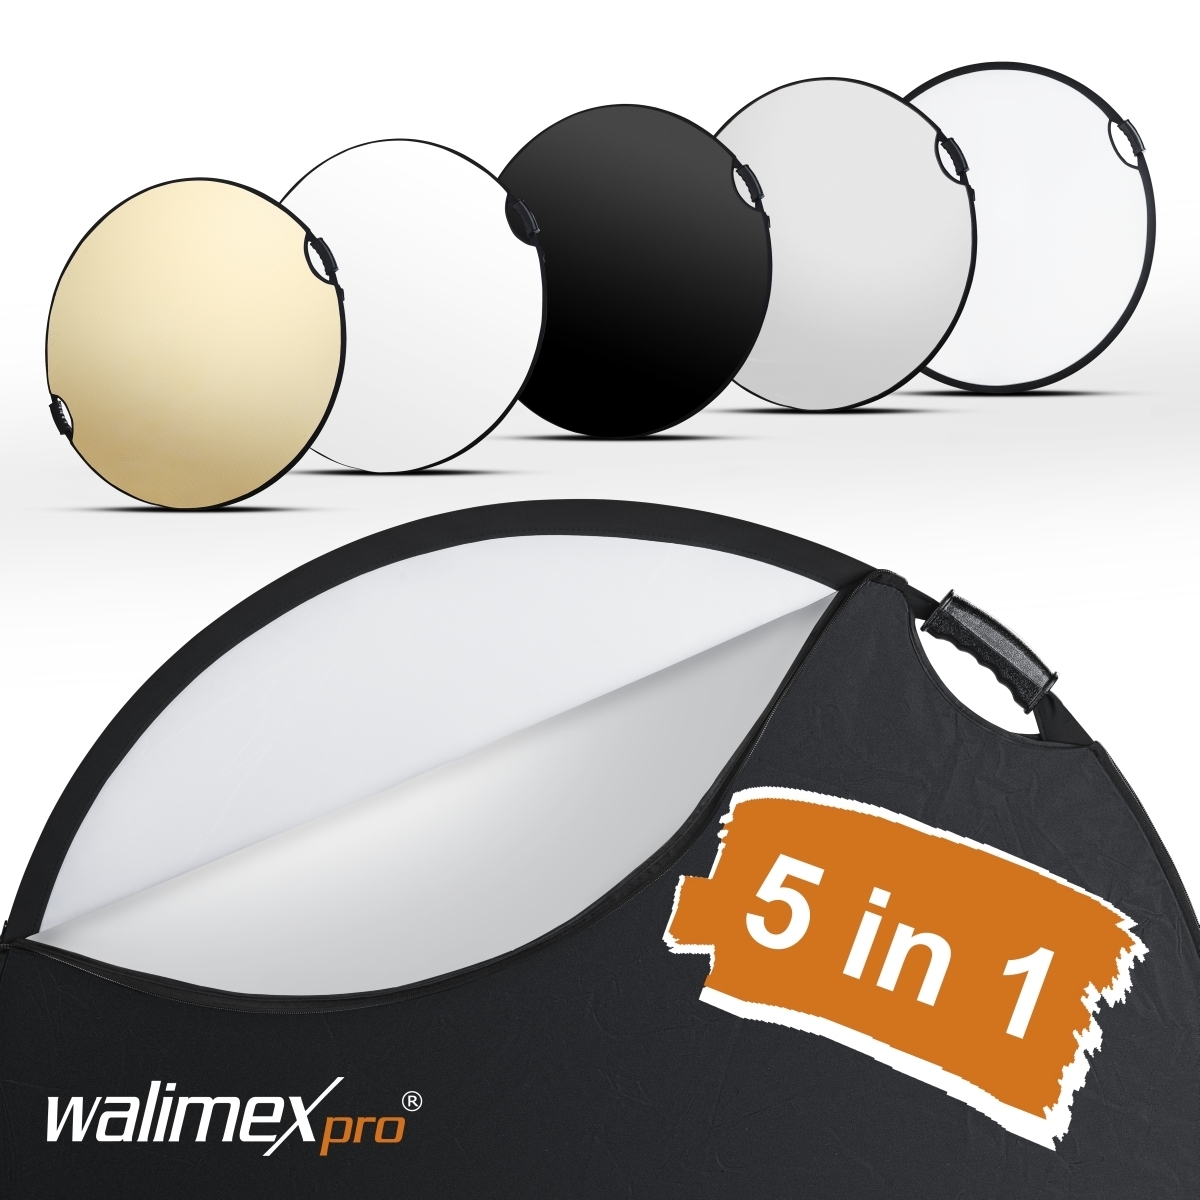 Walimex pro 5in1 vouwreflector wavy comfort Ø56cm met handgrepen en 5 reflectorkleuren